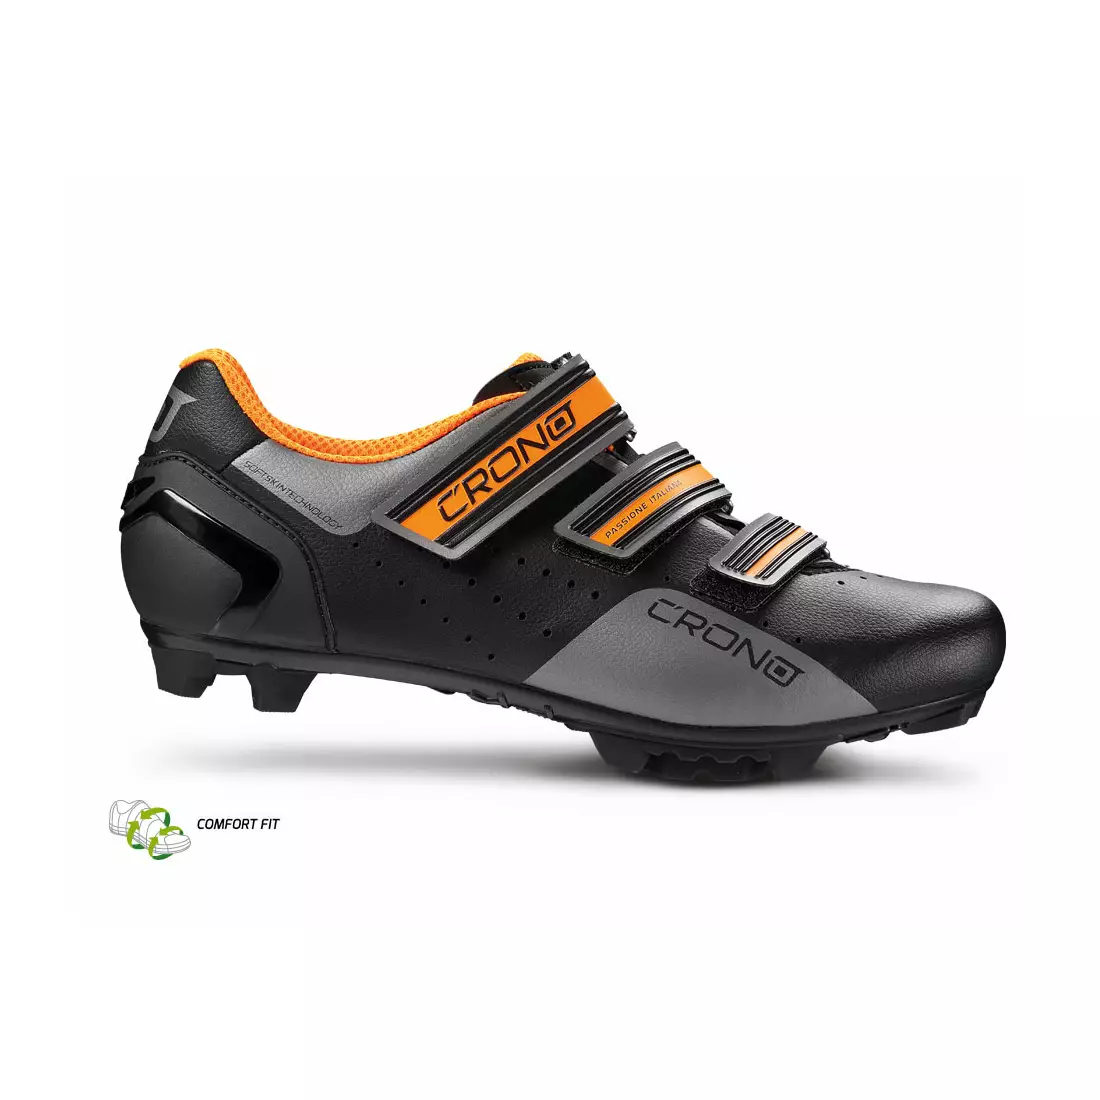 CRONO CX-4 NYLON MTB cyklistická obuv čierno-oranžová